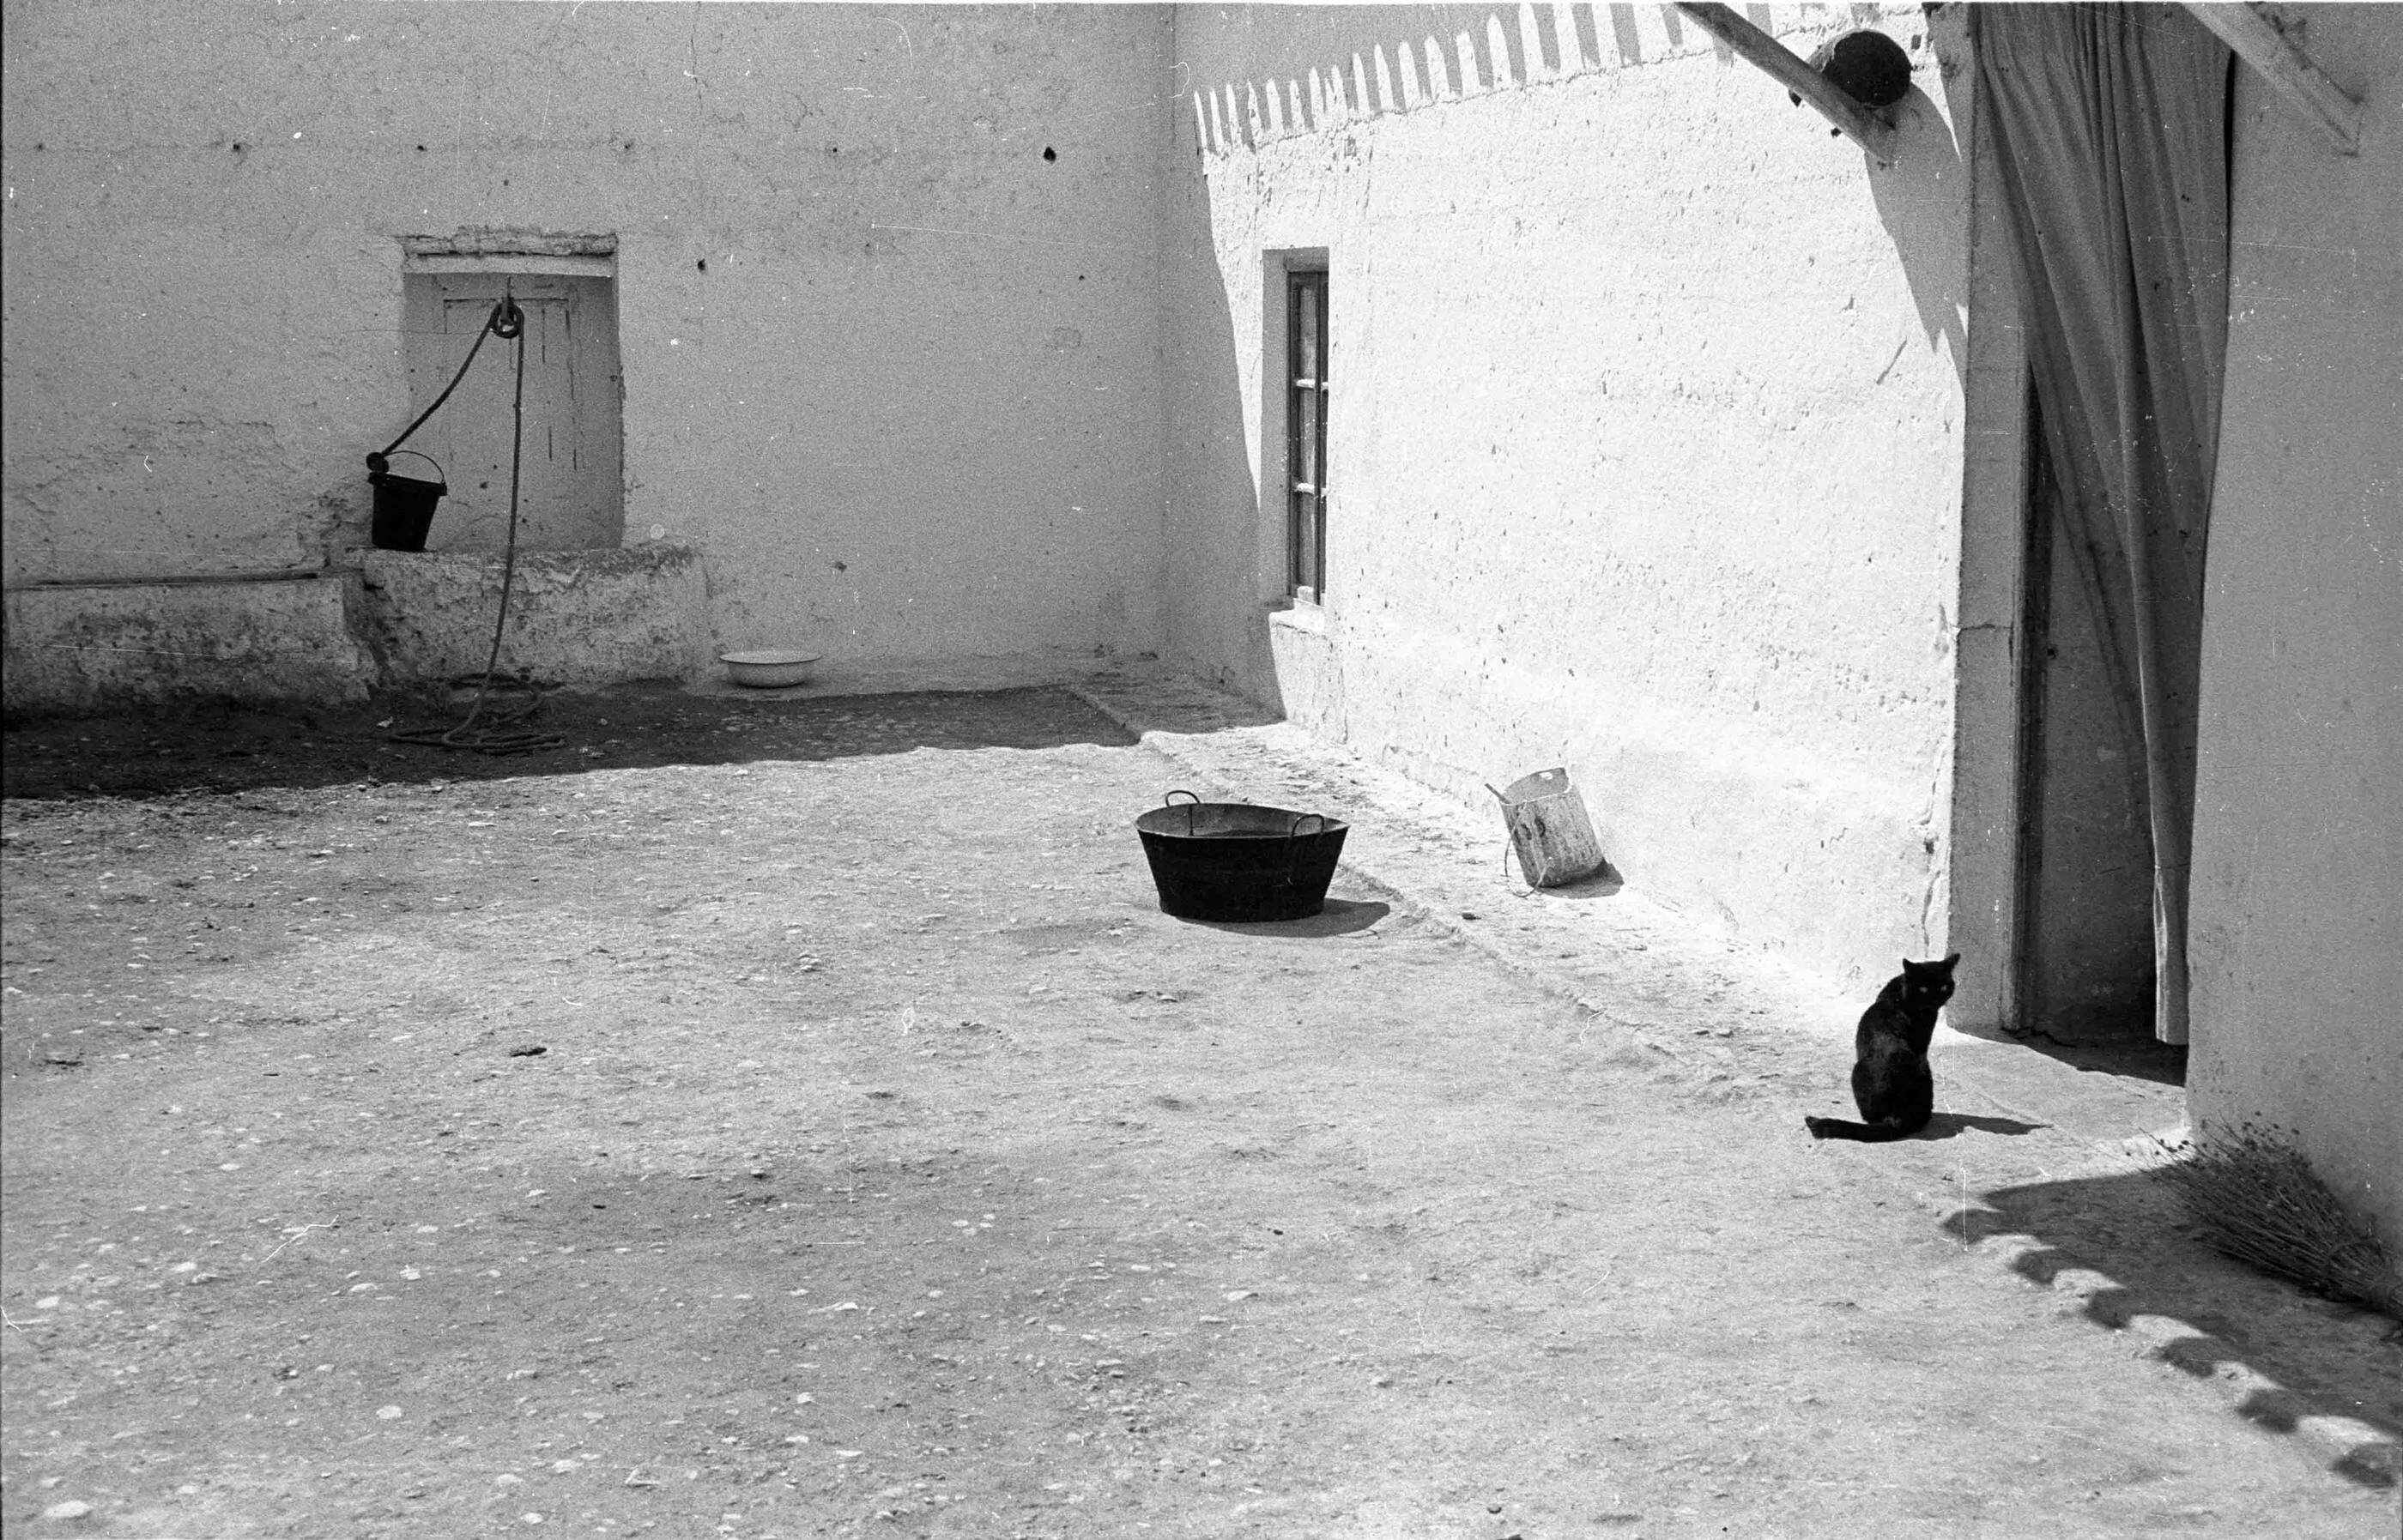 Ла-Манча, Испания, 1963. Фотограф Рамон Масатс